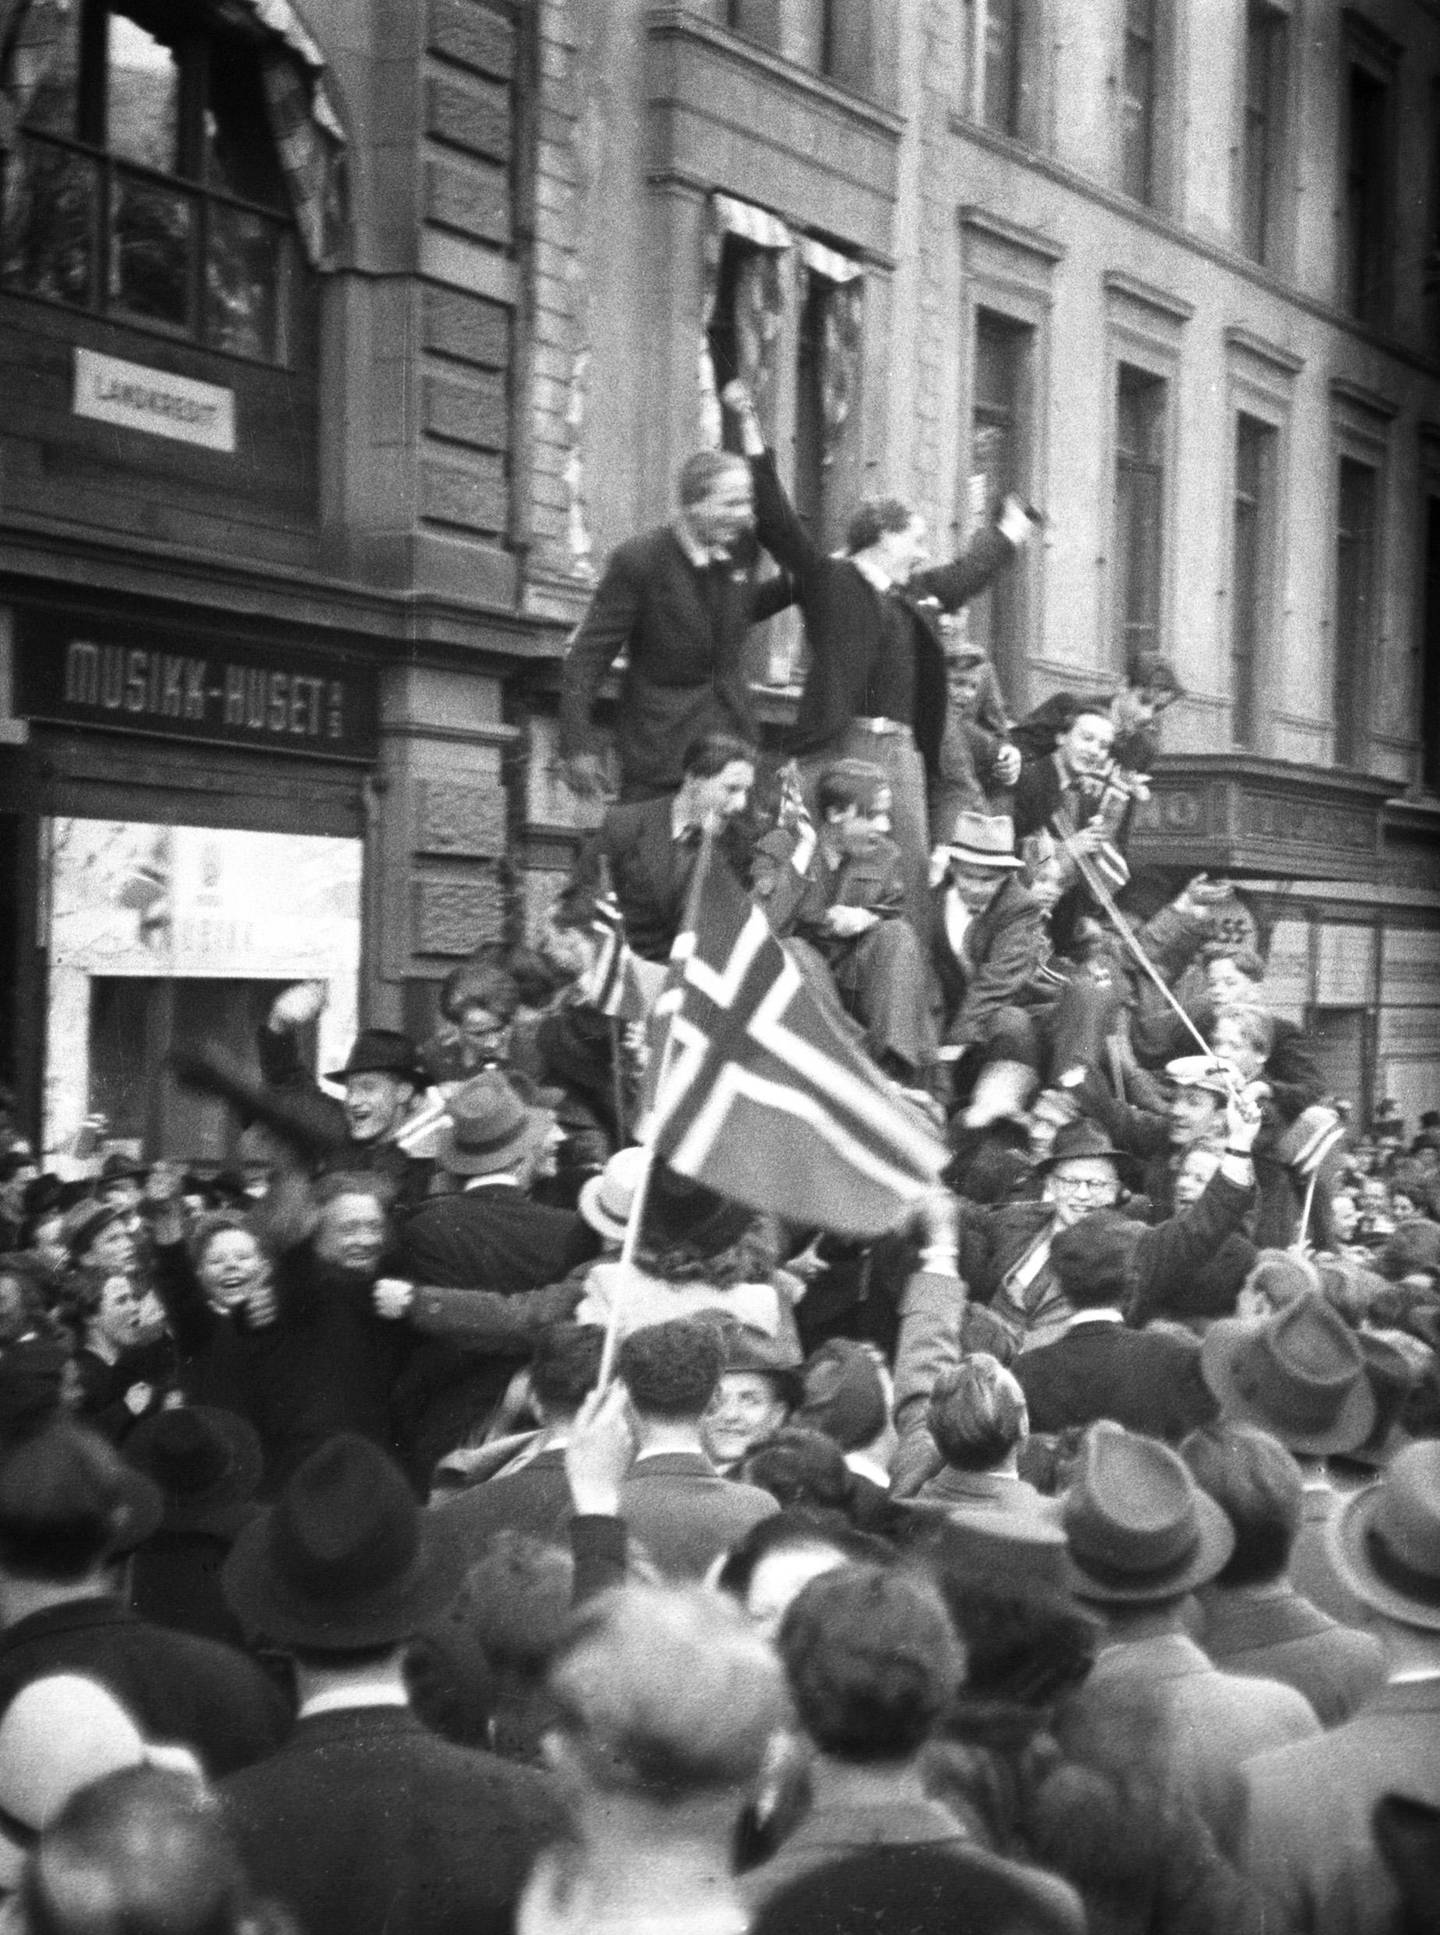 Oslo 19450508:  Fredsdagene mai 1945. Frigjøringsdagen 8. mai, jubel på Karl Johans gate. Biler fulle av jublende mennesker med norske flagg, folkemengder i gatene.
Foto: Kihle / NTB / Scanpix